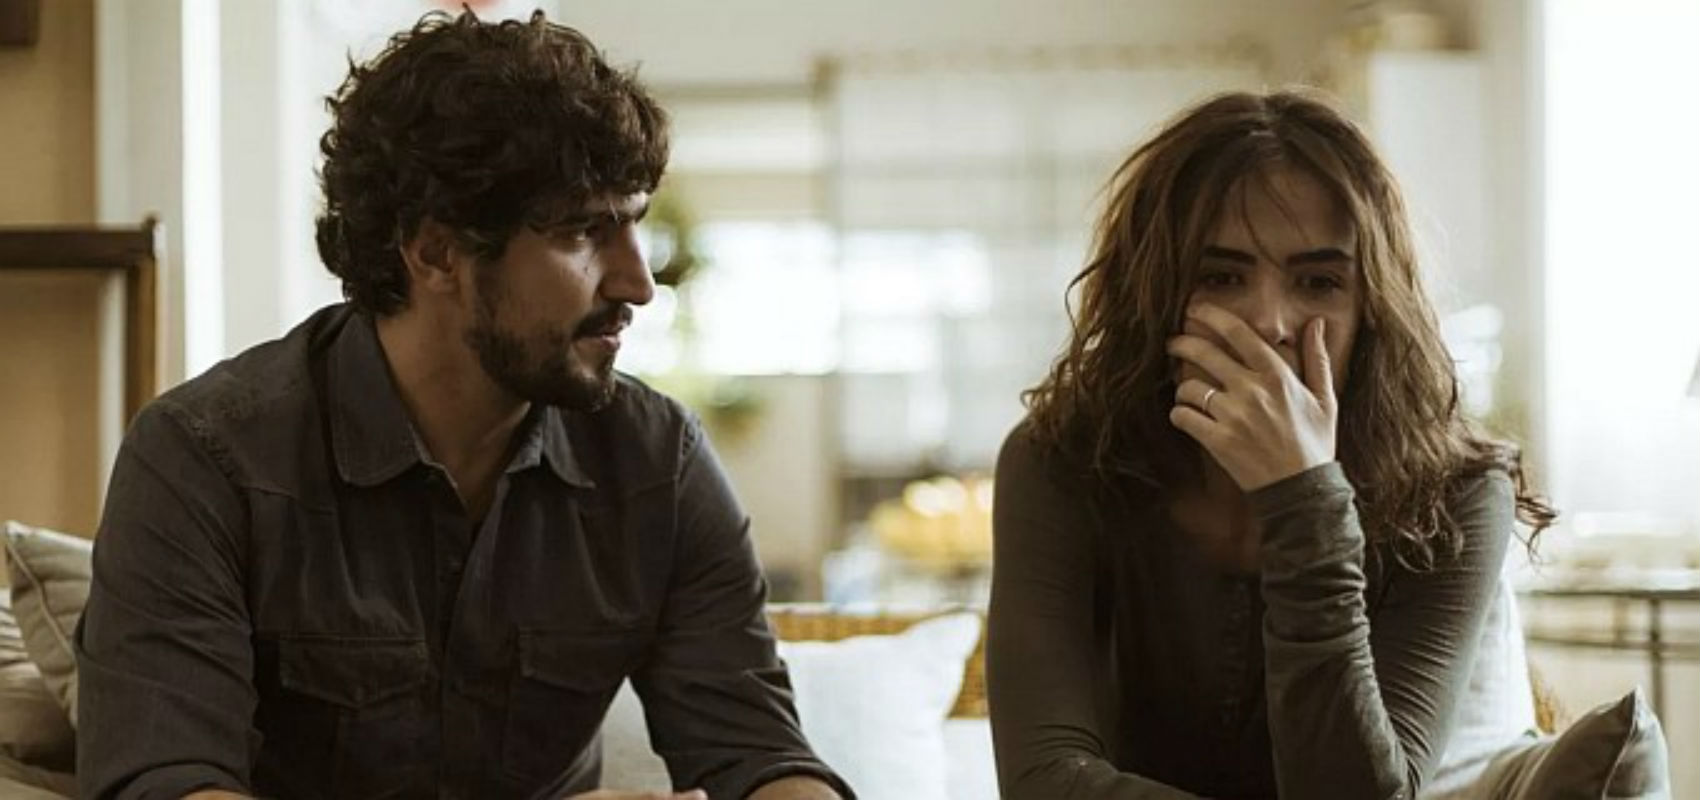 Em " Os Dias Eram Assim", Rimena discute com Renato e confessa estar confusa com seus sentimentos por Gustavo.